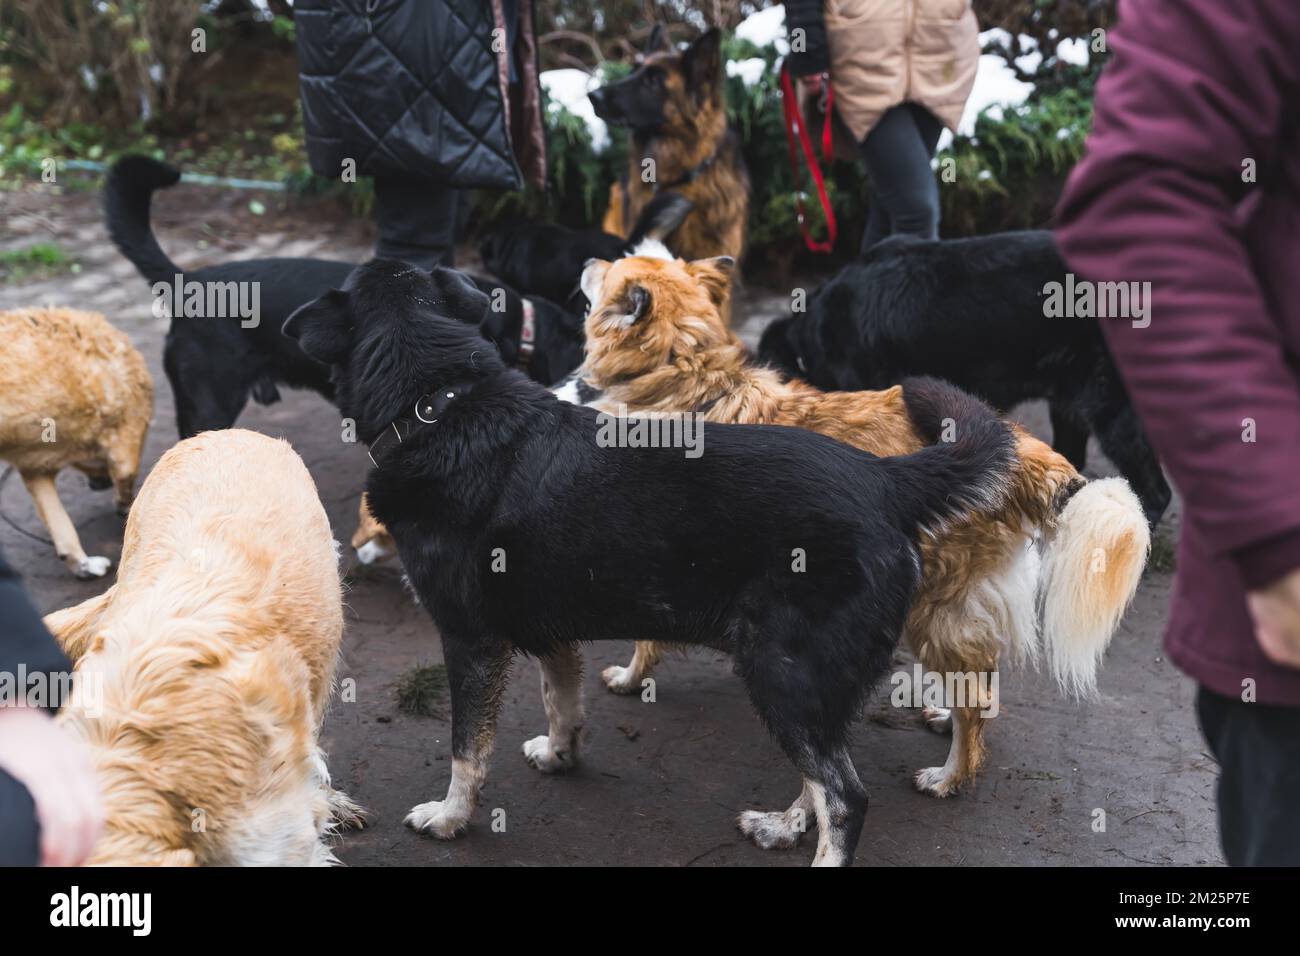 Private Unterkünfte für obdachlose Hunde. Viele bunte Mischtiere, die gemeinsam im Garten spazieren gehen und auf einen Spaziergang mit Freiwilligen warten. Hochwertiges Foto Stockfoto